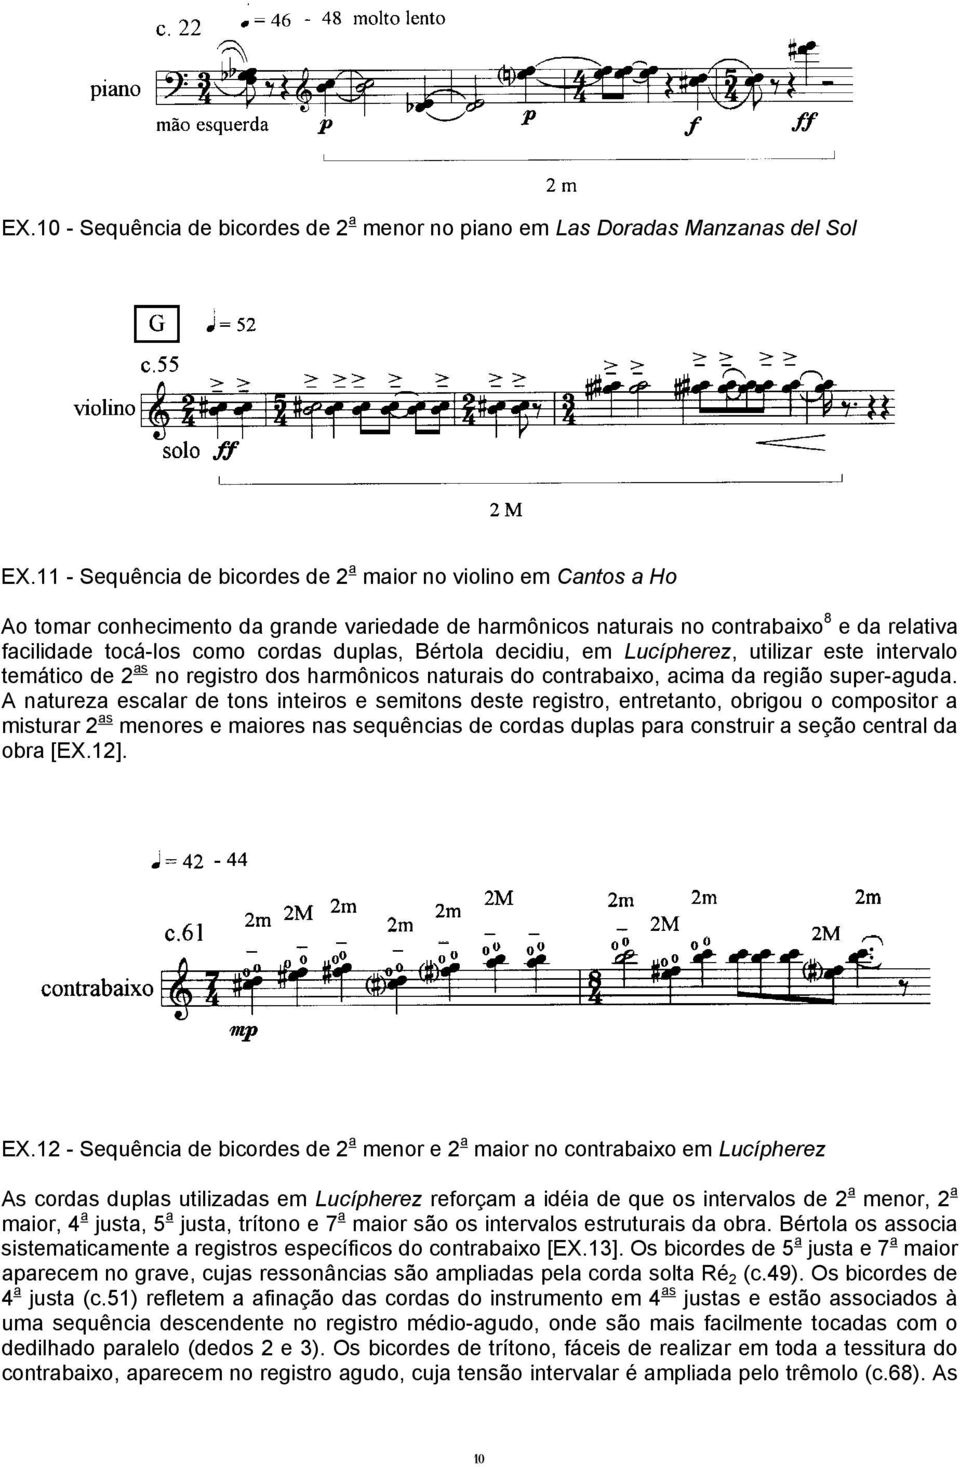 duplas, Bértola decidiu, em Lucípherez, utilizar este intervalo temático de 2 as no registro dos harmônicos naturais do contrabaixo, acima da região super-aguda.